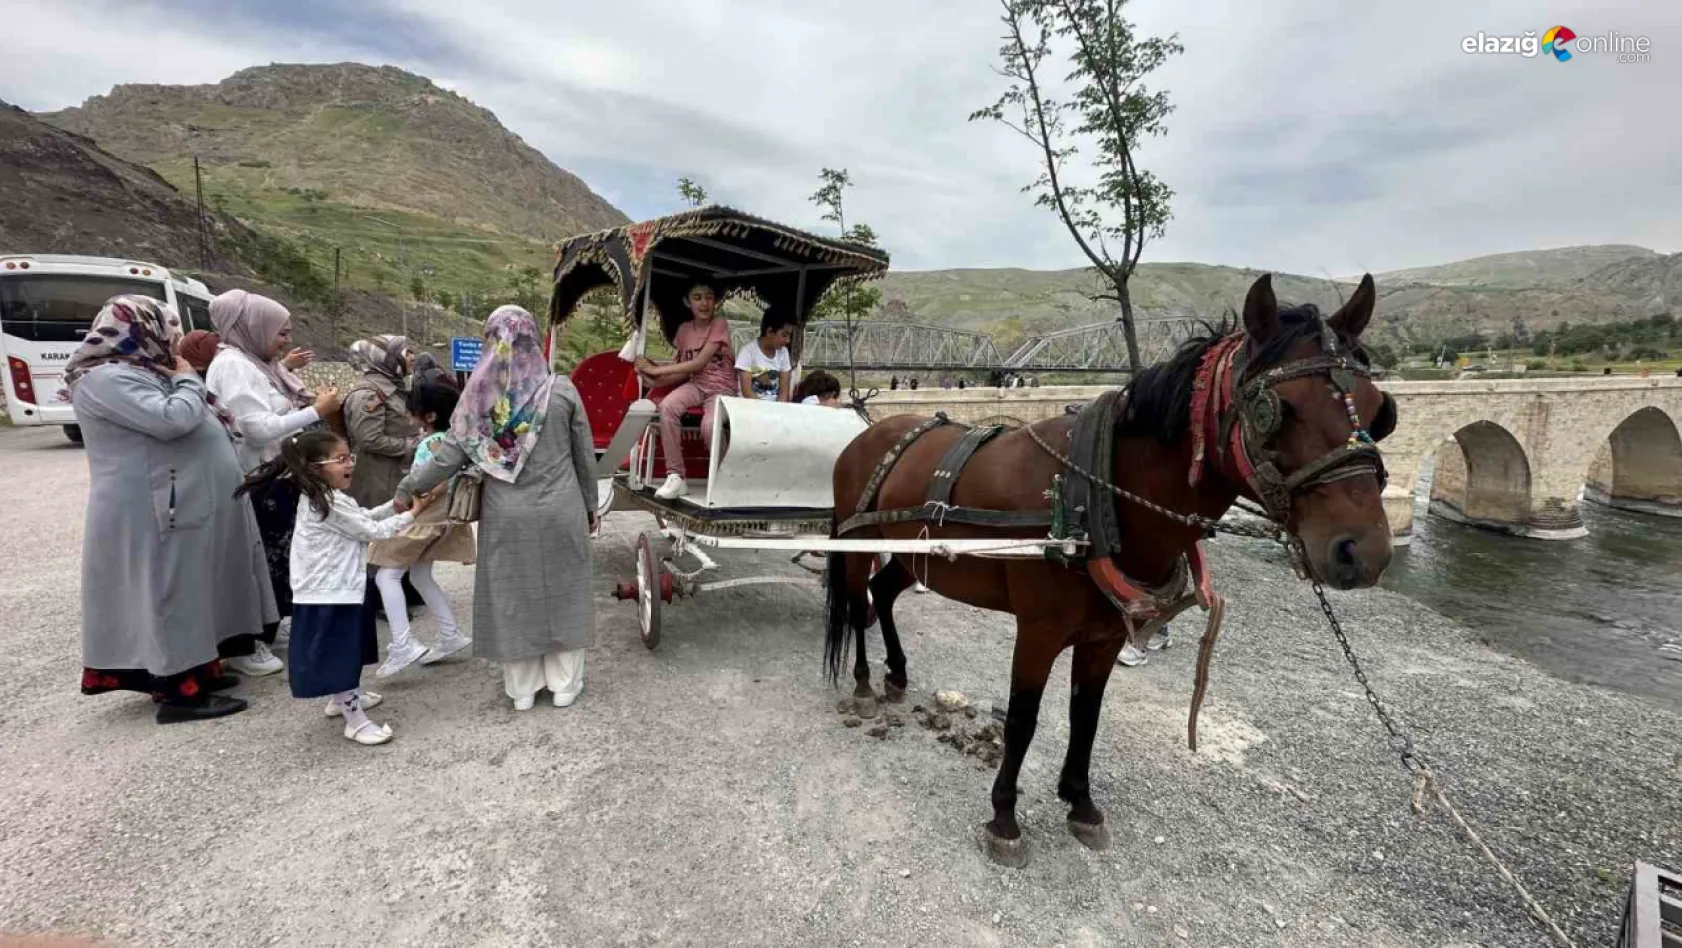 Elazığ'ın tarihi Palu ilçesi, sezonun ilk turistlerini ağırlıyor